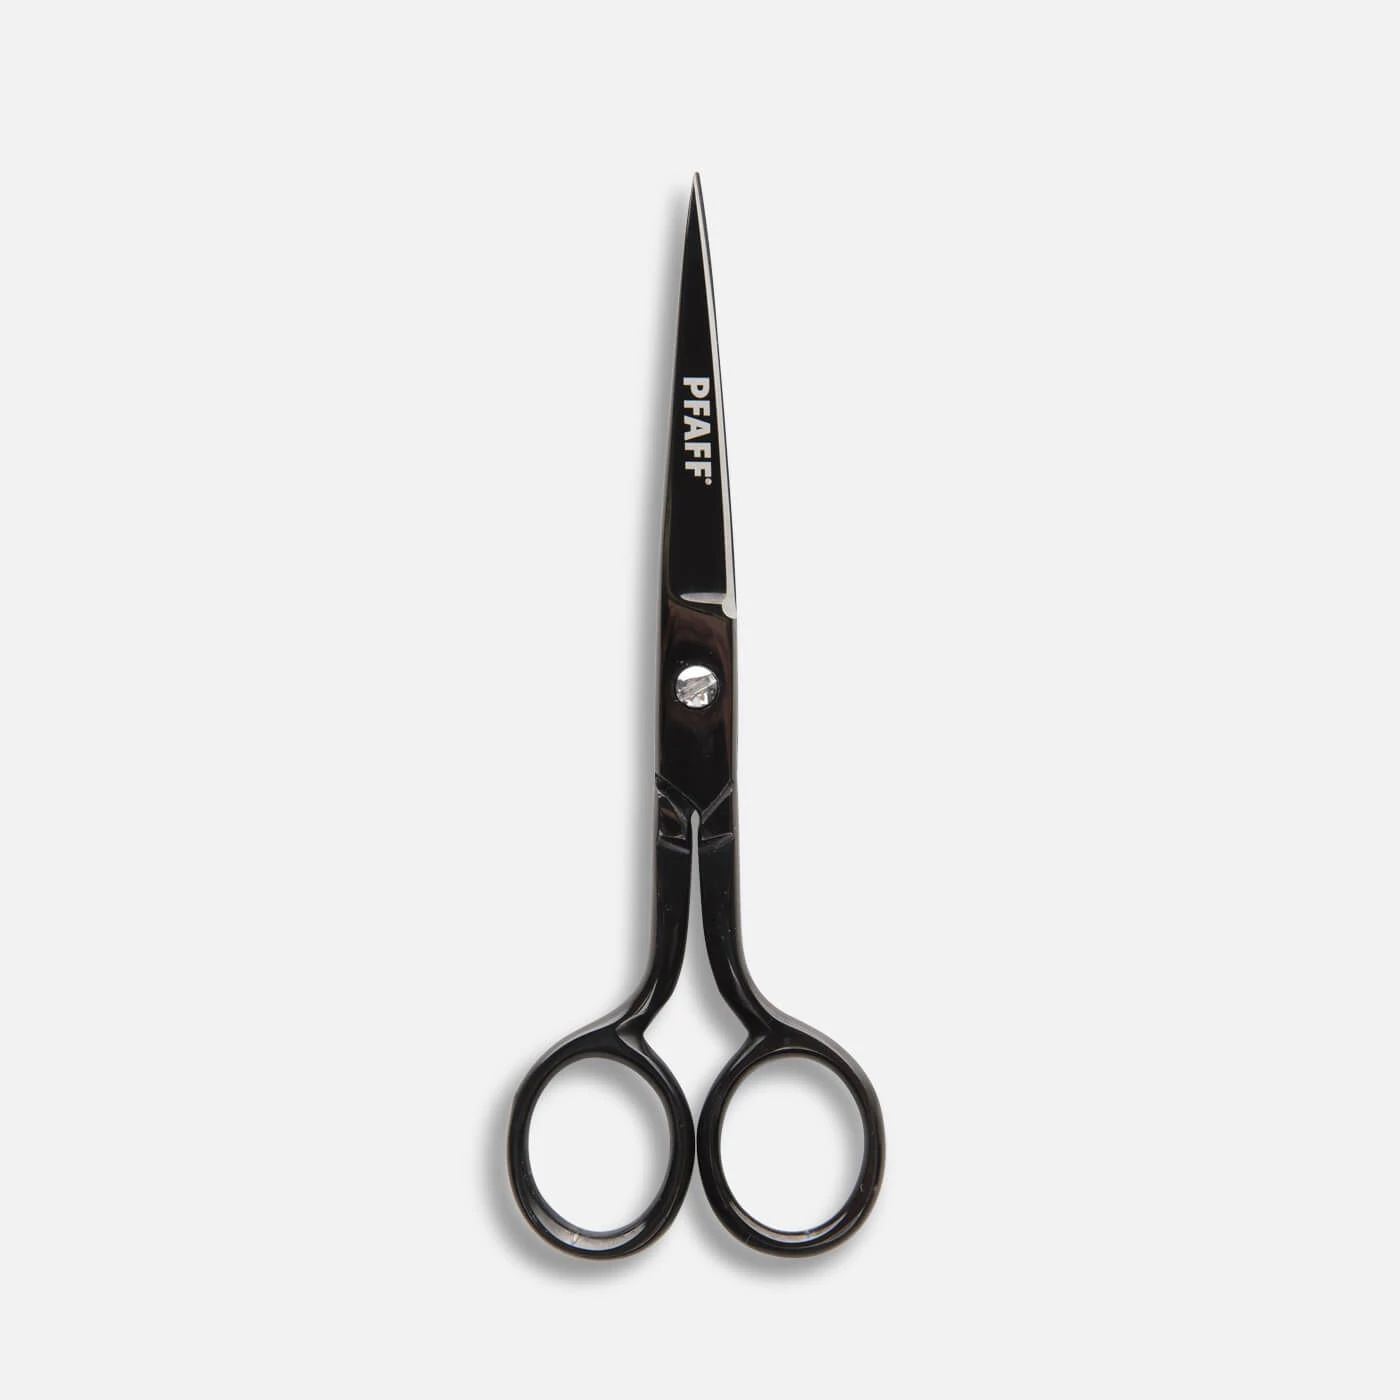 Madeira Applique Scissors. 15cm (6 inch)